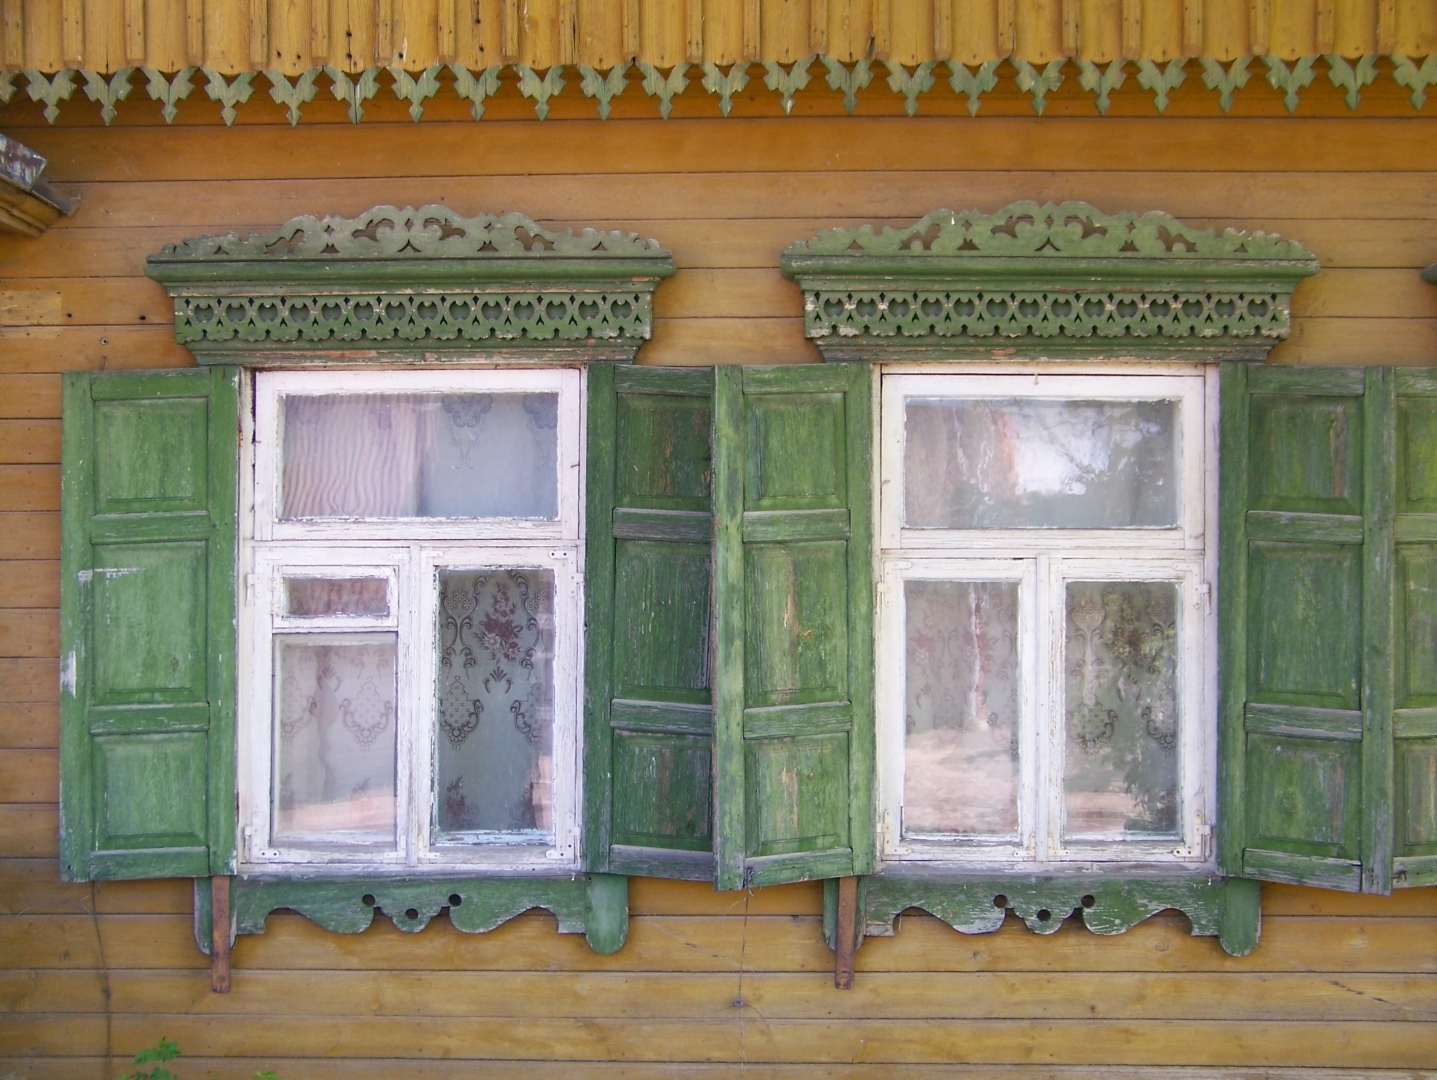 Divi logi koka mājā